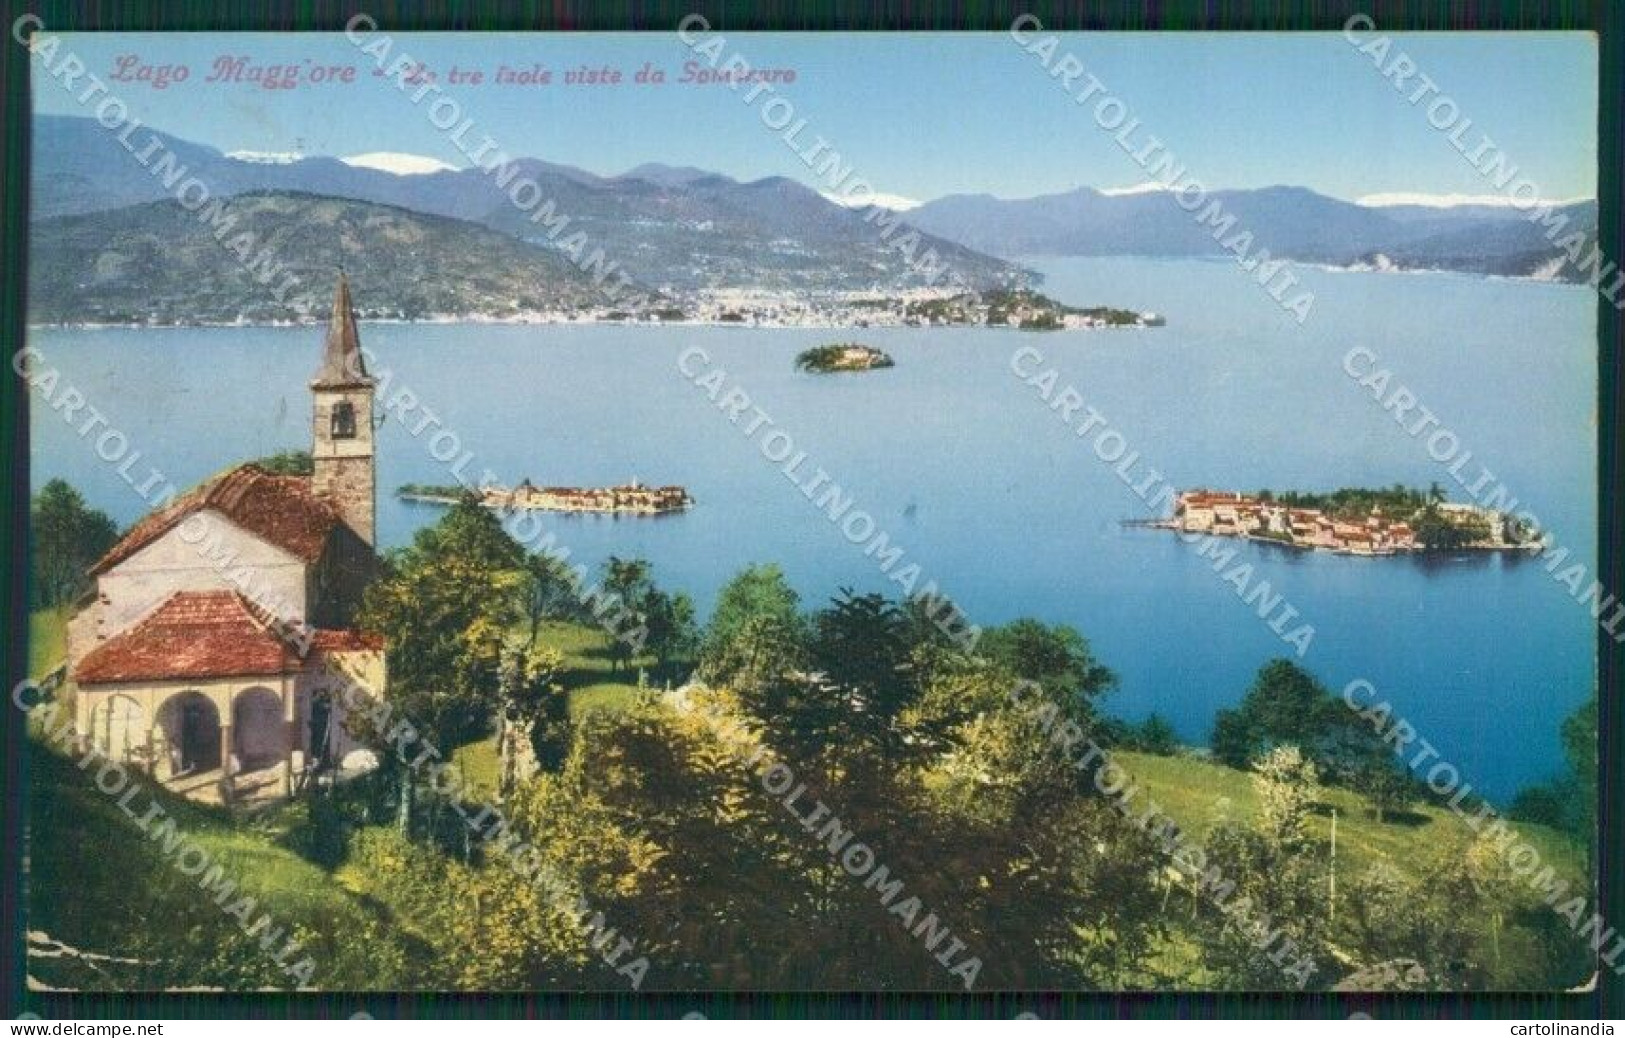 Verbania Stresa Someraro Lago Maggiore PIEGHE Cartolina KV4674 - Verbania